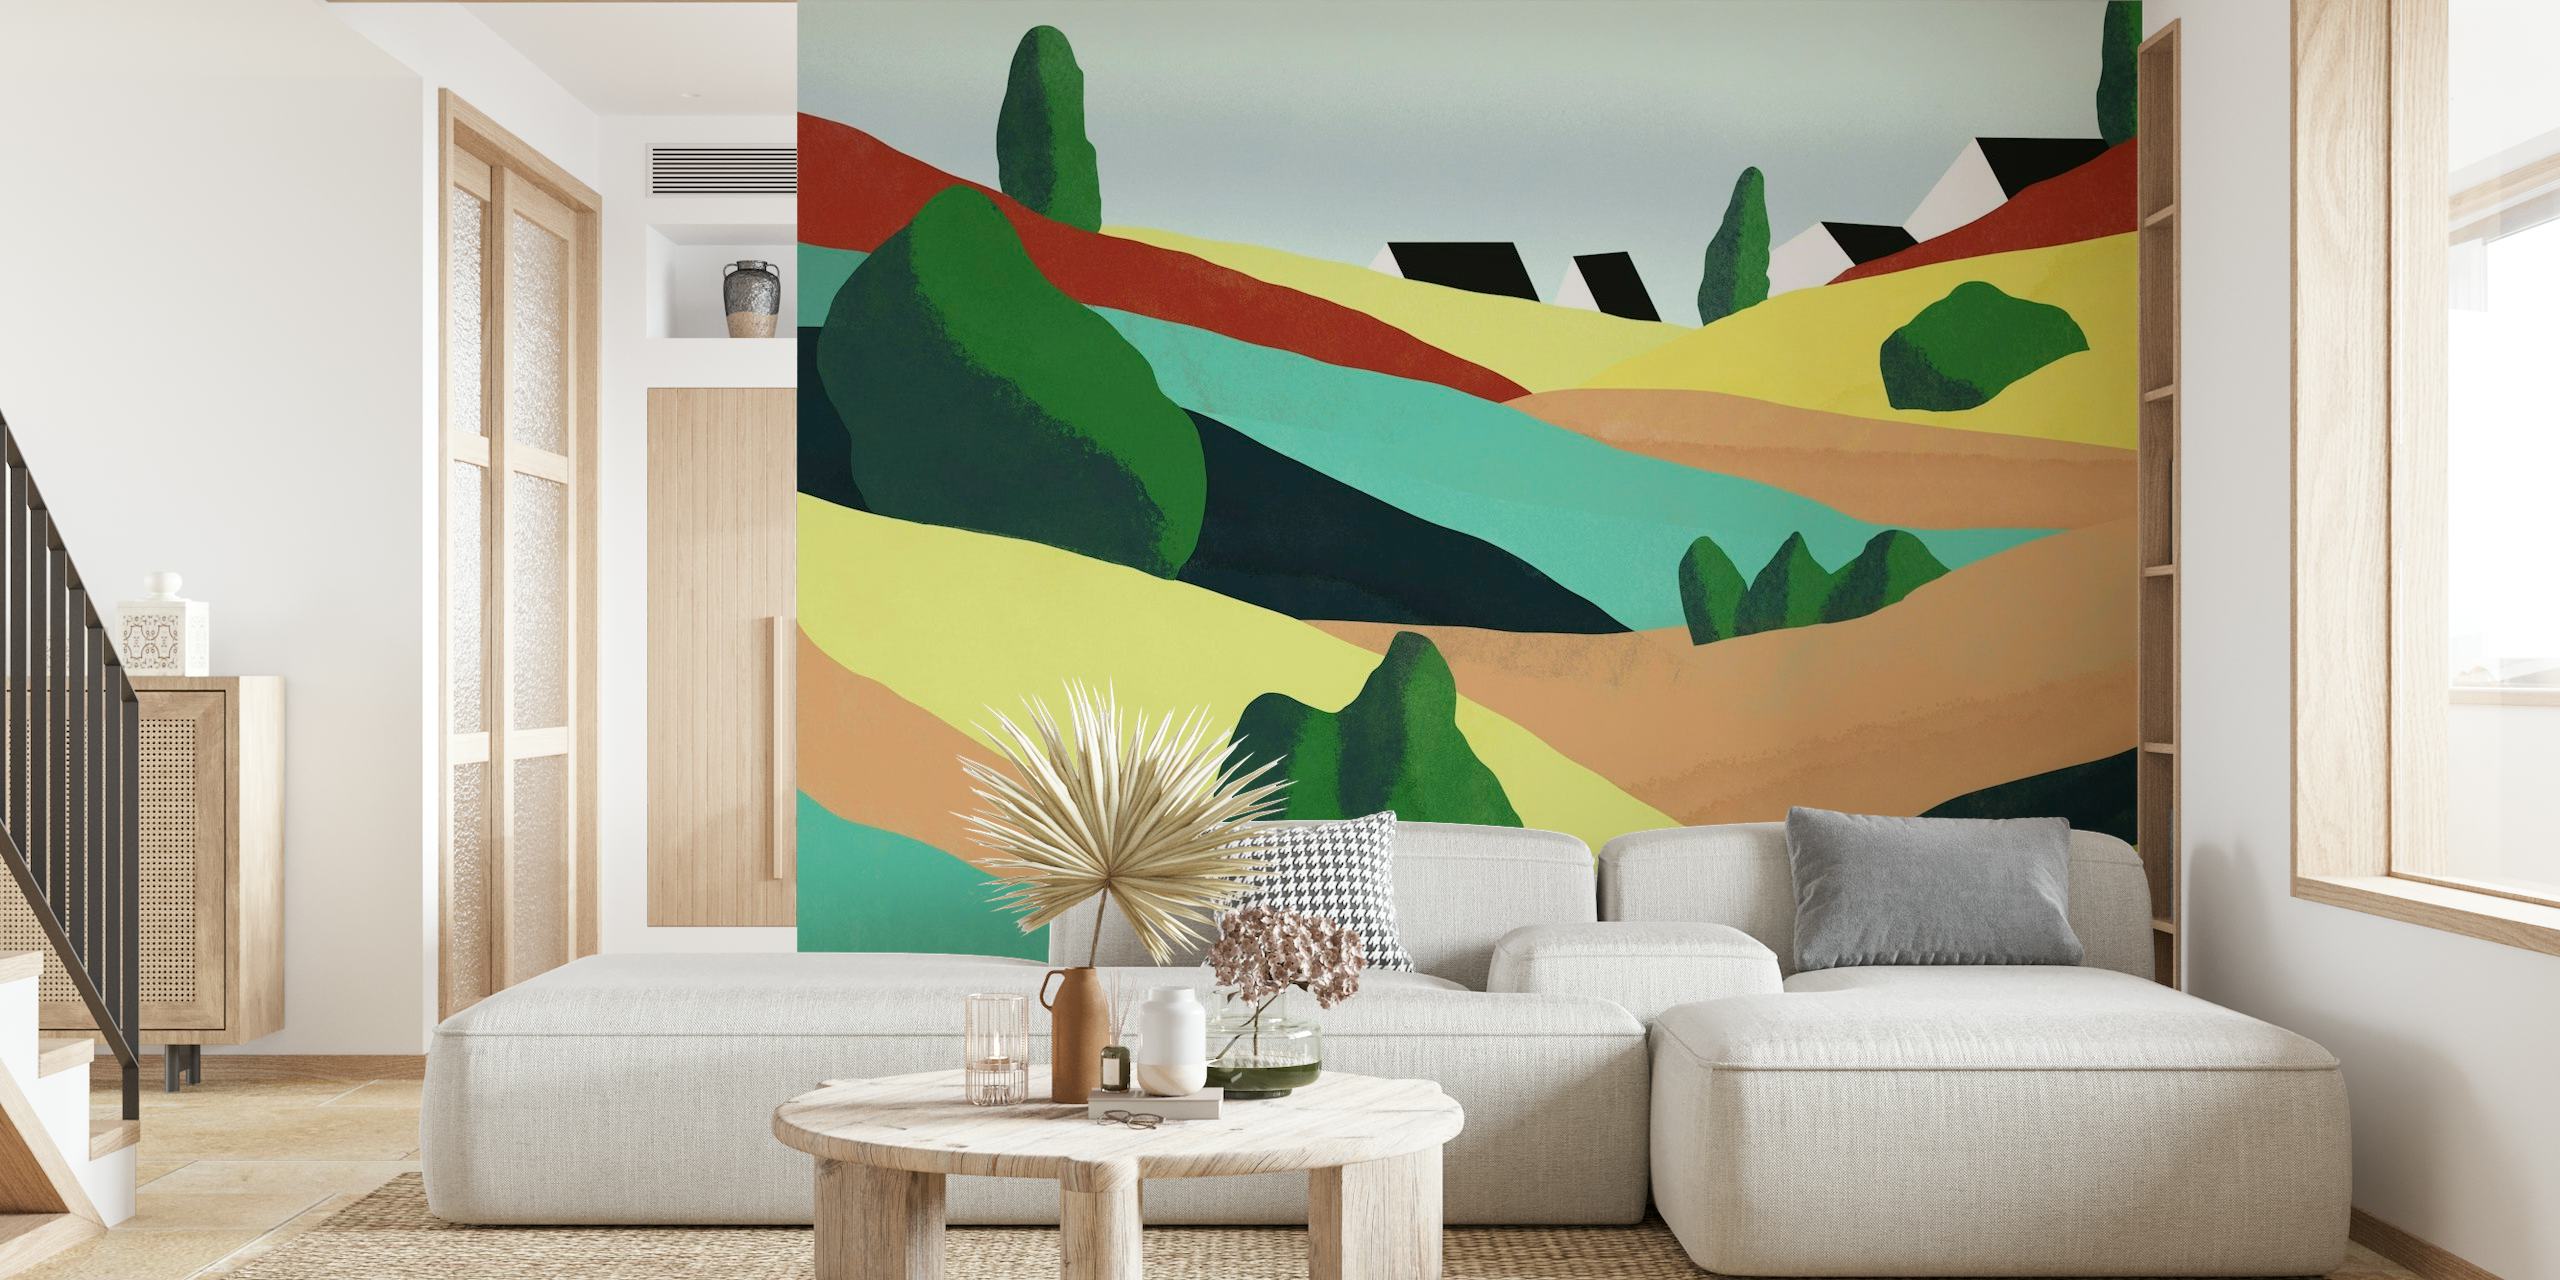 Abstrakti mäkiä kuvaava seinämaalaus värikkäällä sarjakuvamaisella maisemalla